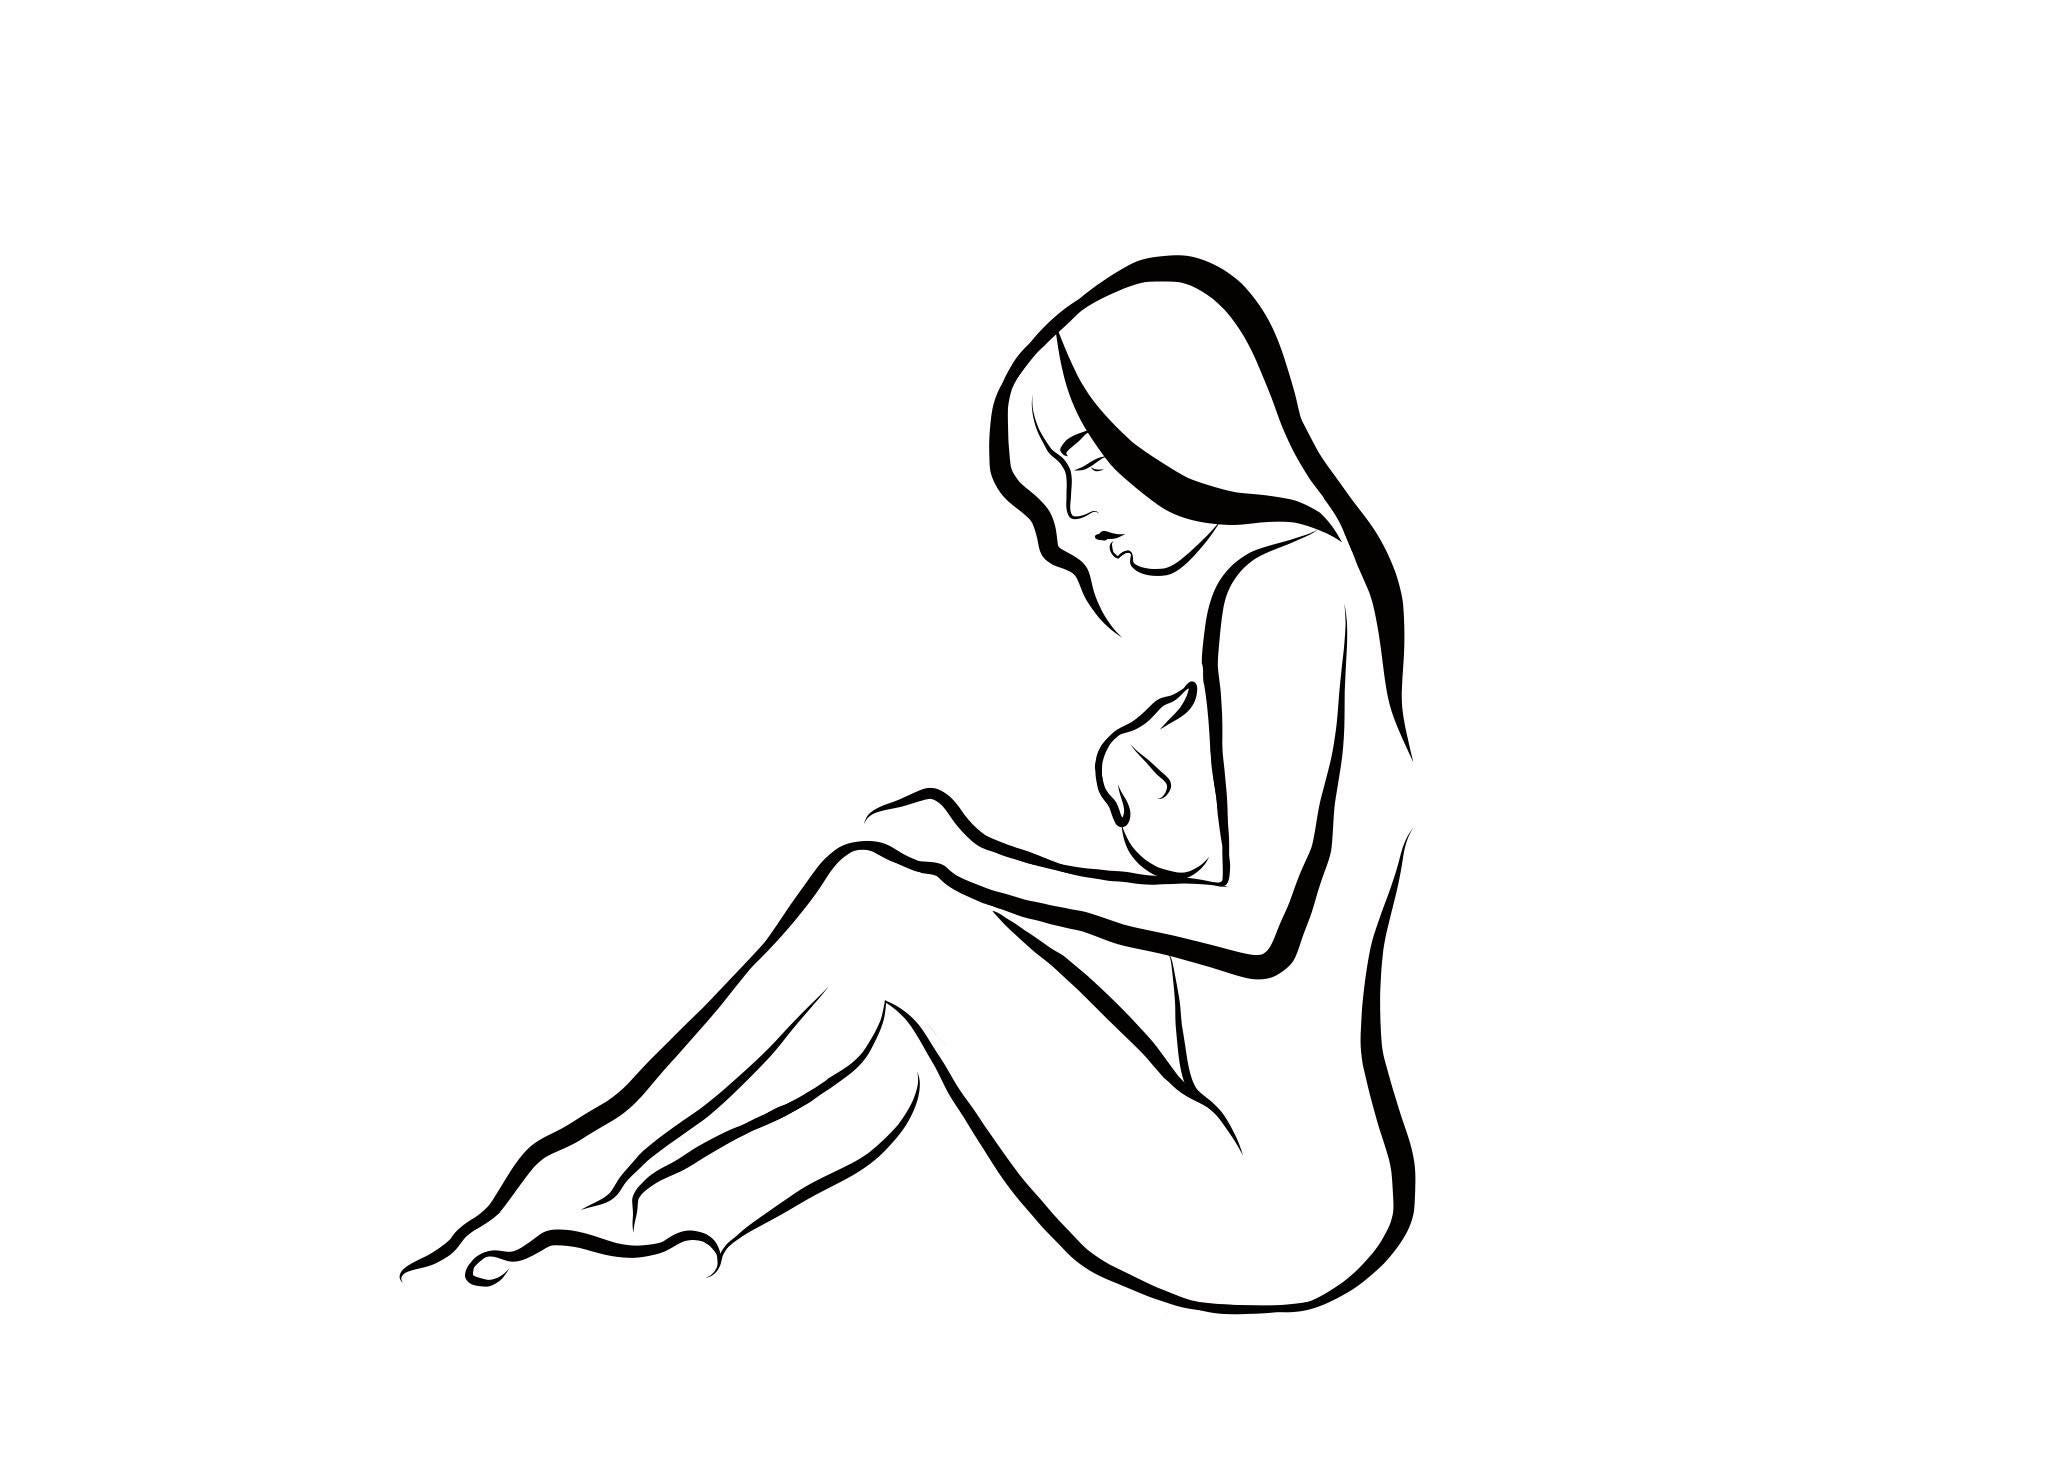 Haiku #21 - 1/50, Digital Vector Drawing Seated Female Nude Woman Figure Cover - Art by Michael Binkley